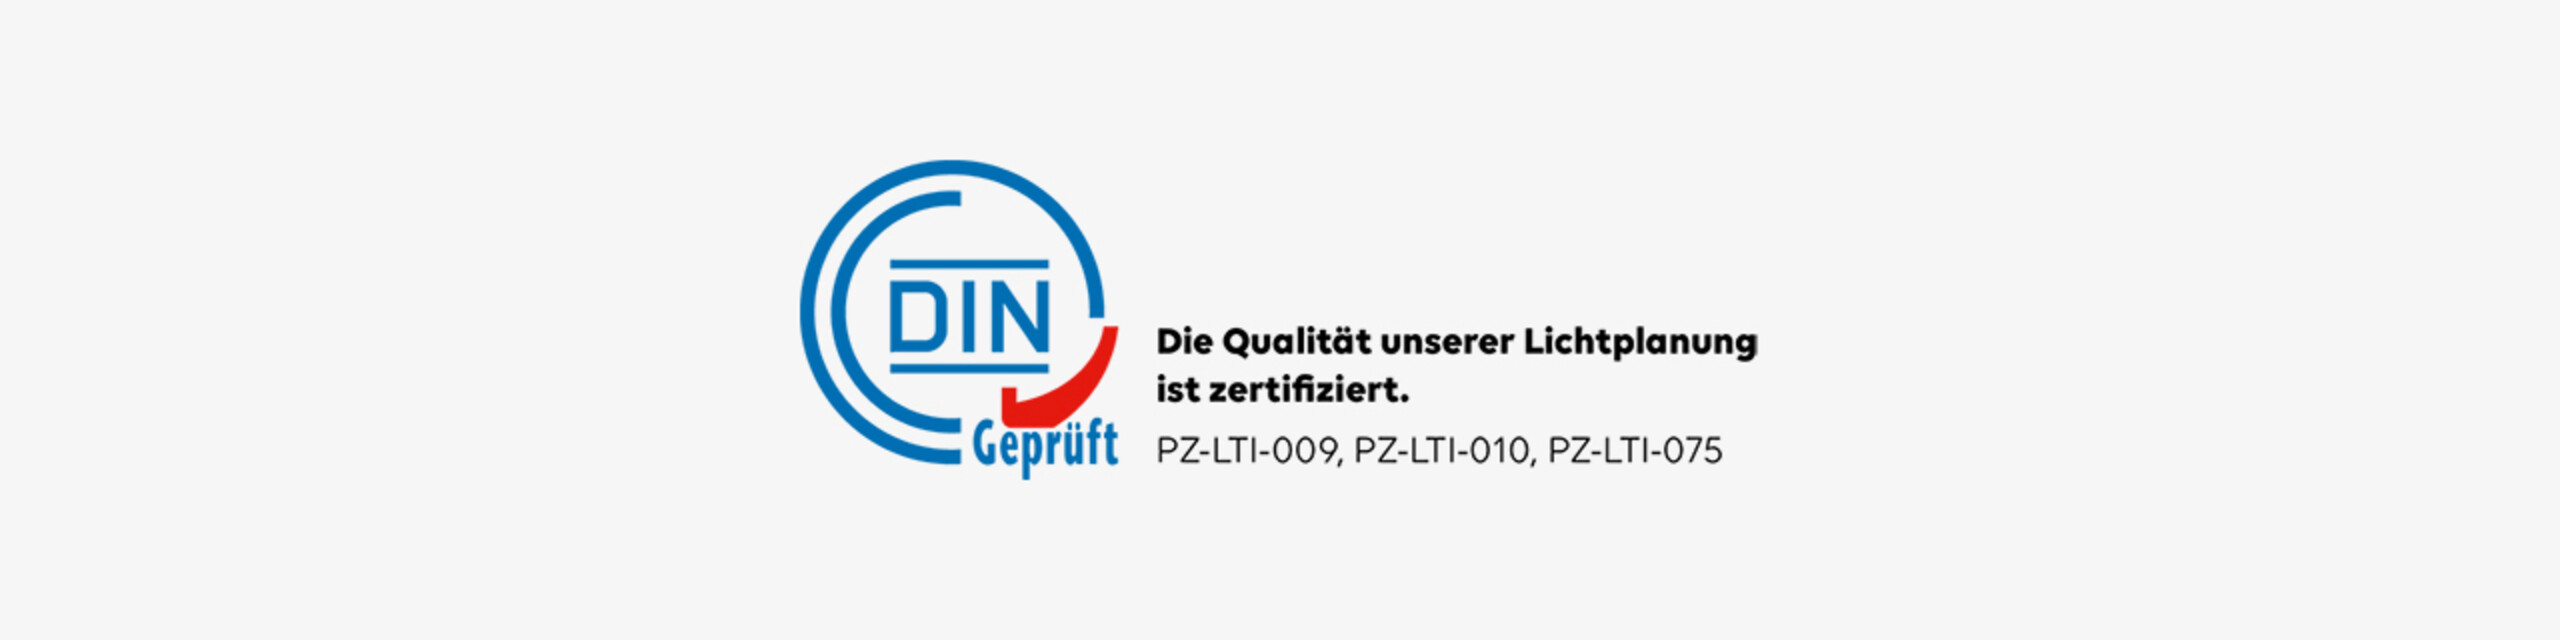 DIN-geprüft-Logo und Text "Die Qualität unserer Lichtplanung ist zertifiziert"